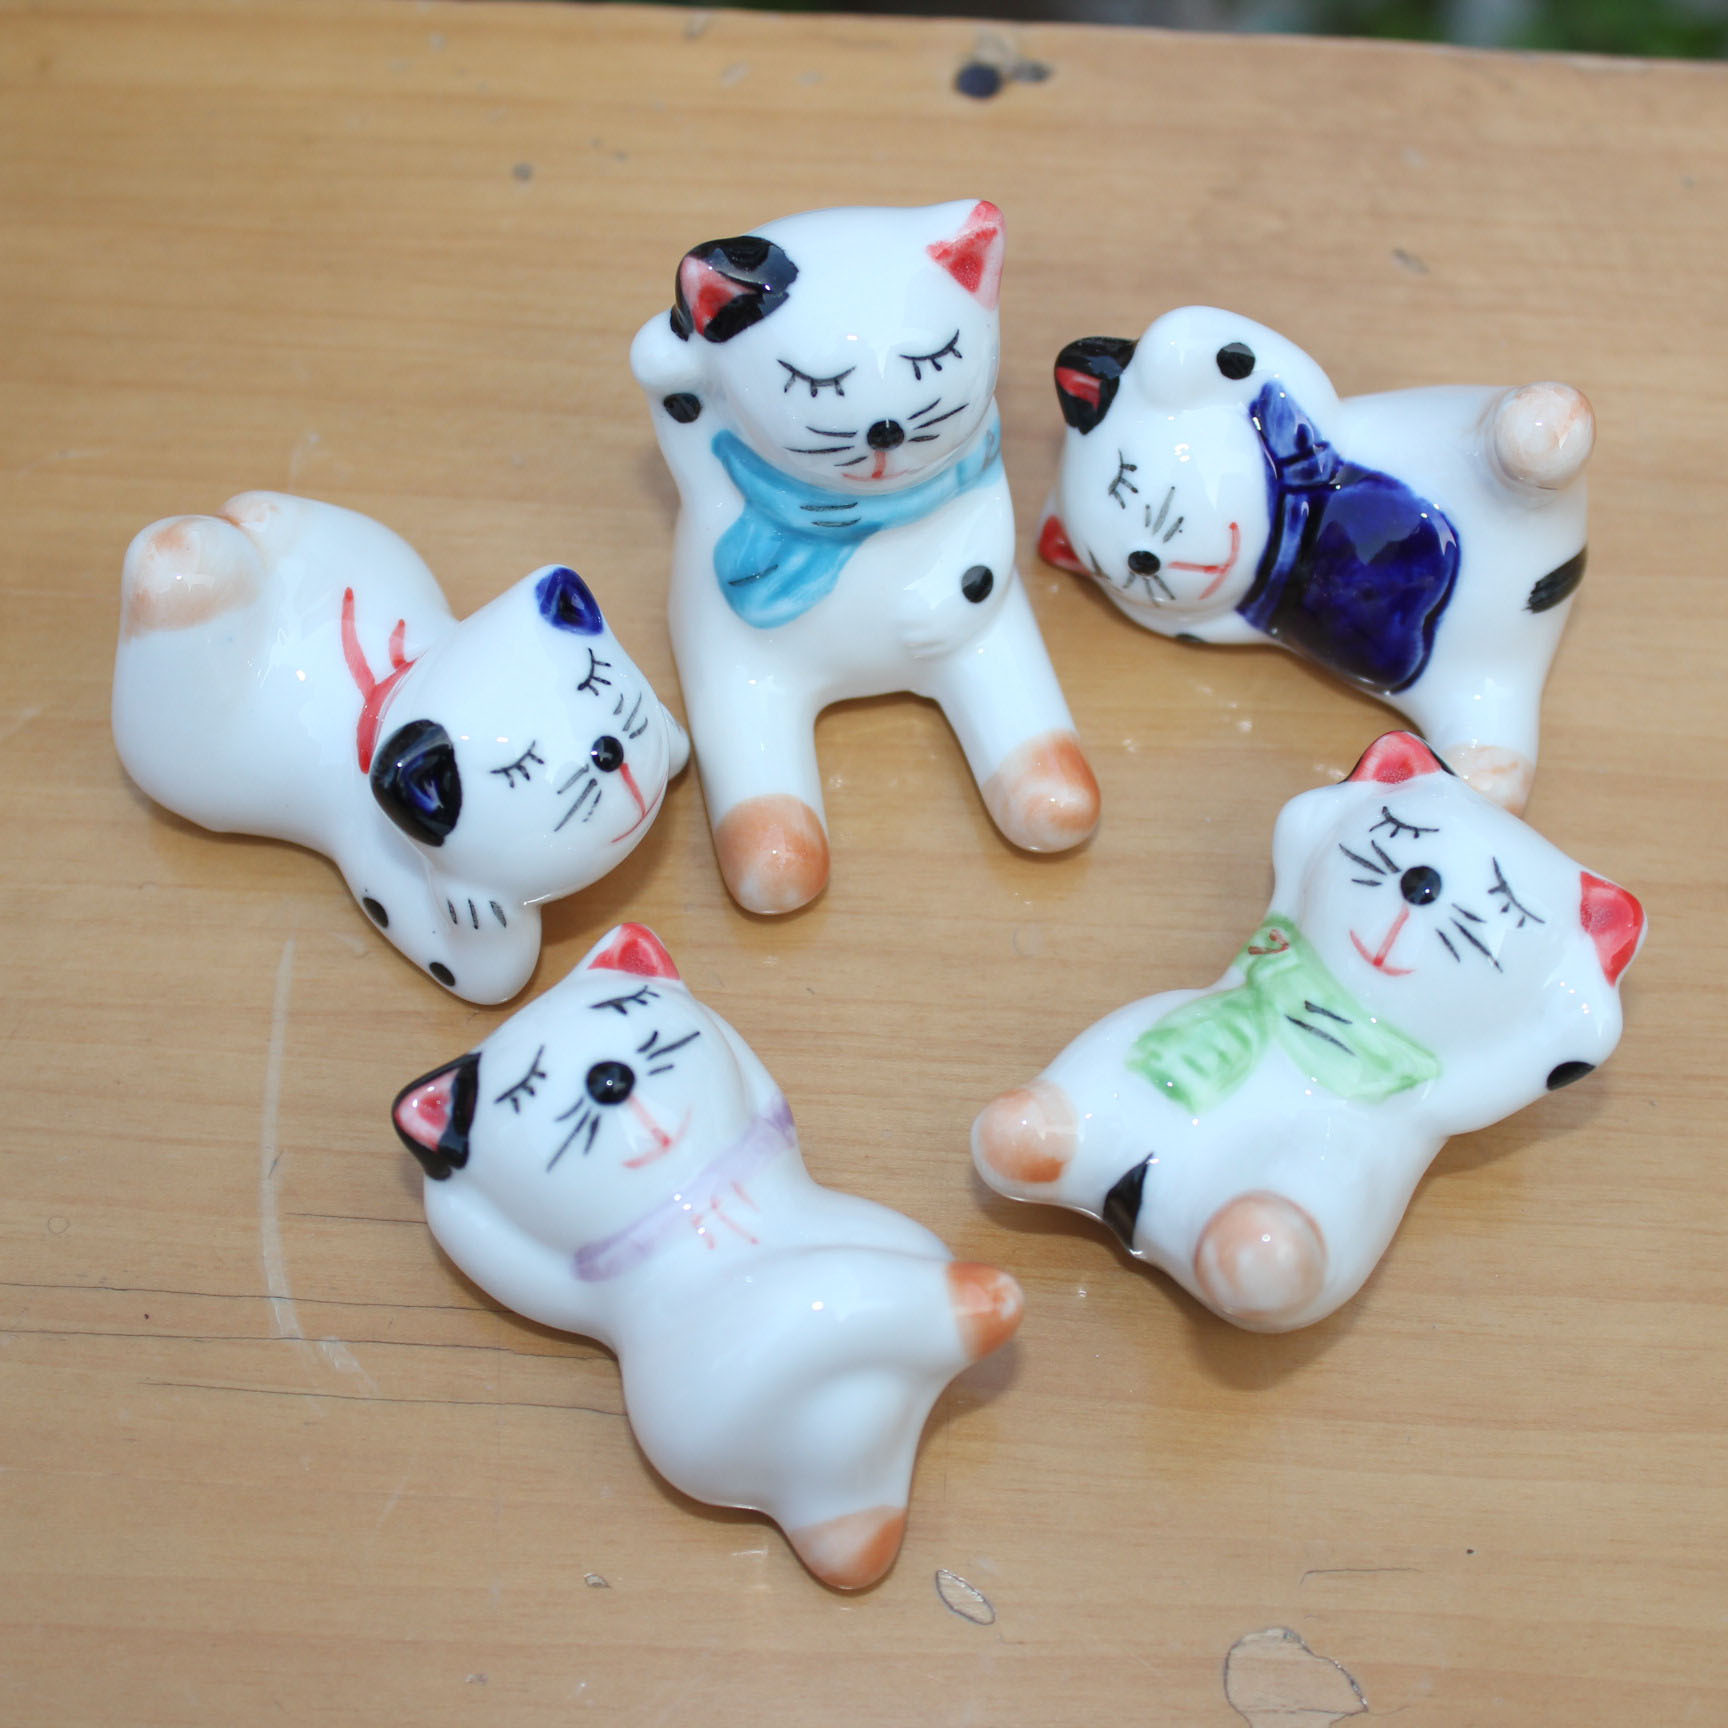 陶瓷摆件12567招财猫筷子架笔托笔架套五猫咪陶瓷工艺品日用品